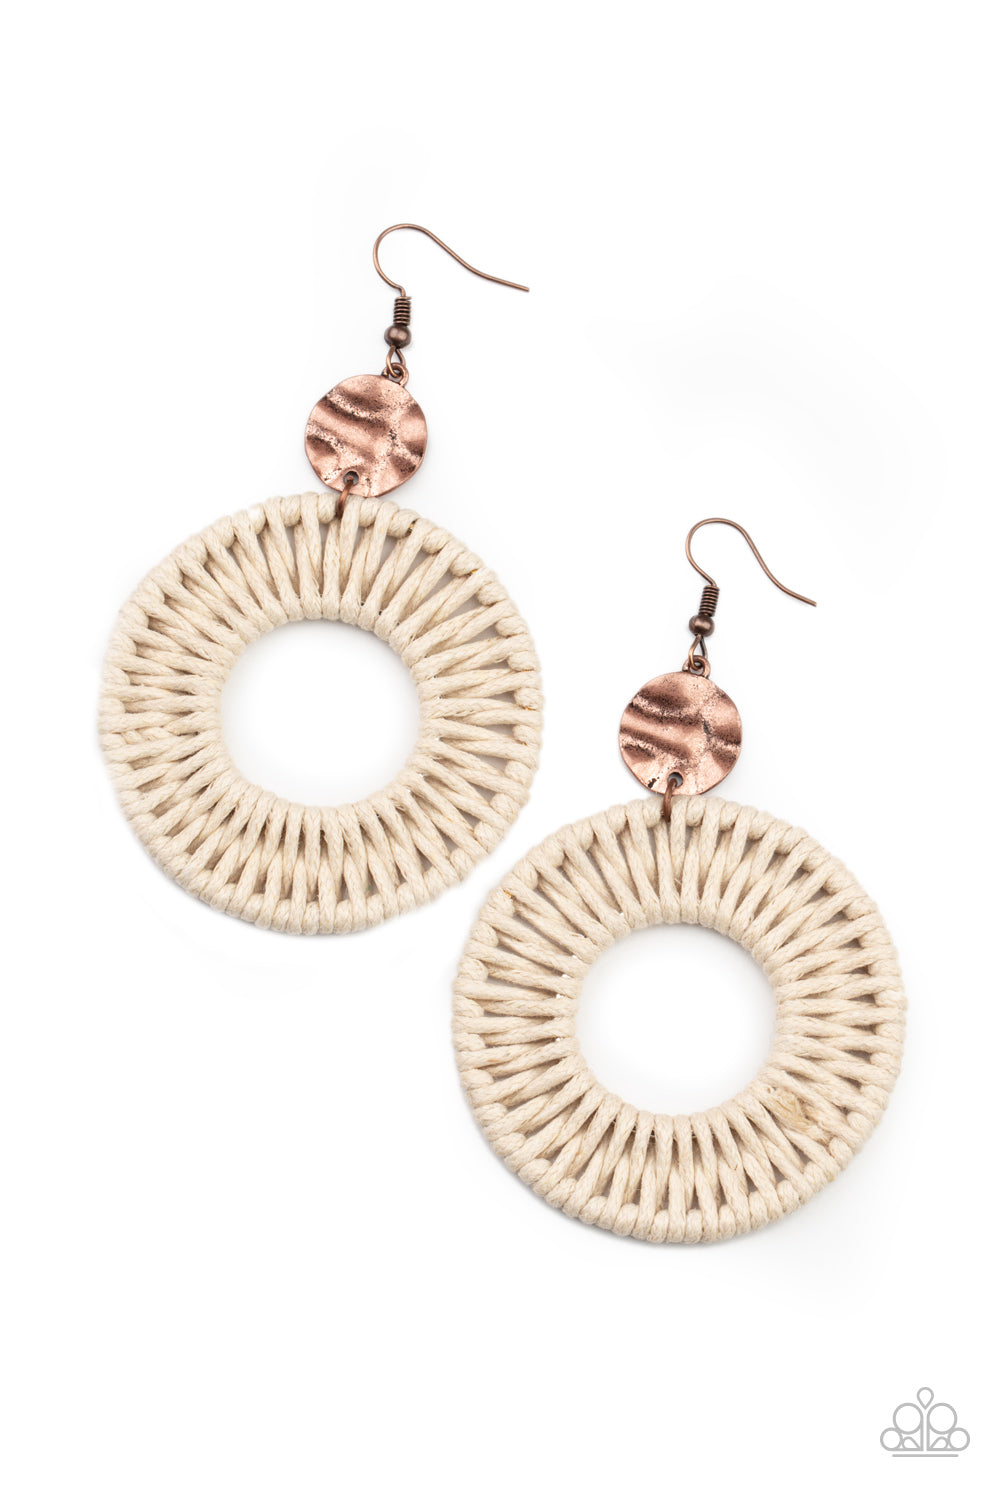 Total Basket Case - Copper Earrings